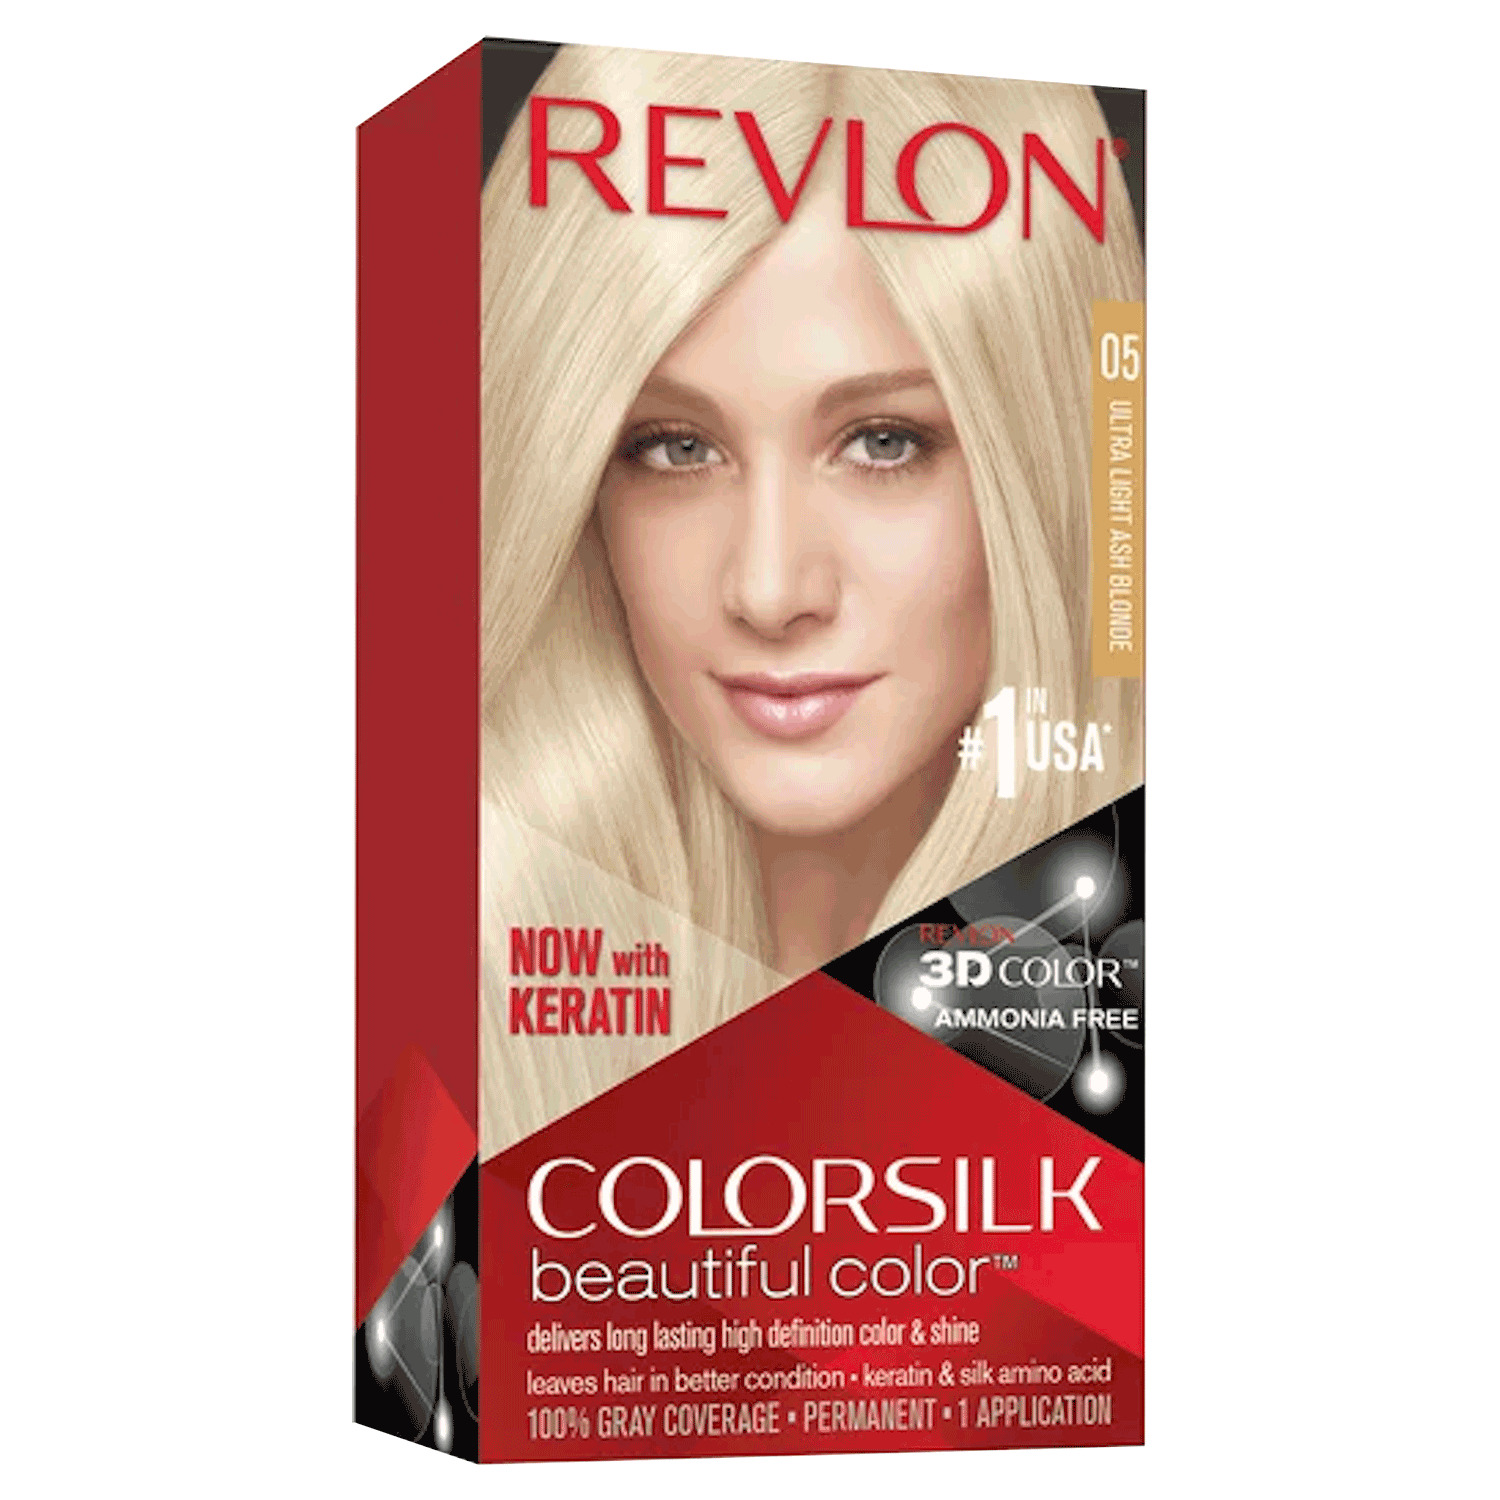 Revlon - Colorsilk Beautiful Color, permanent hair colour - 05 Ultra Light Ash Blonde